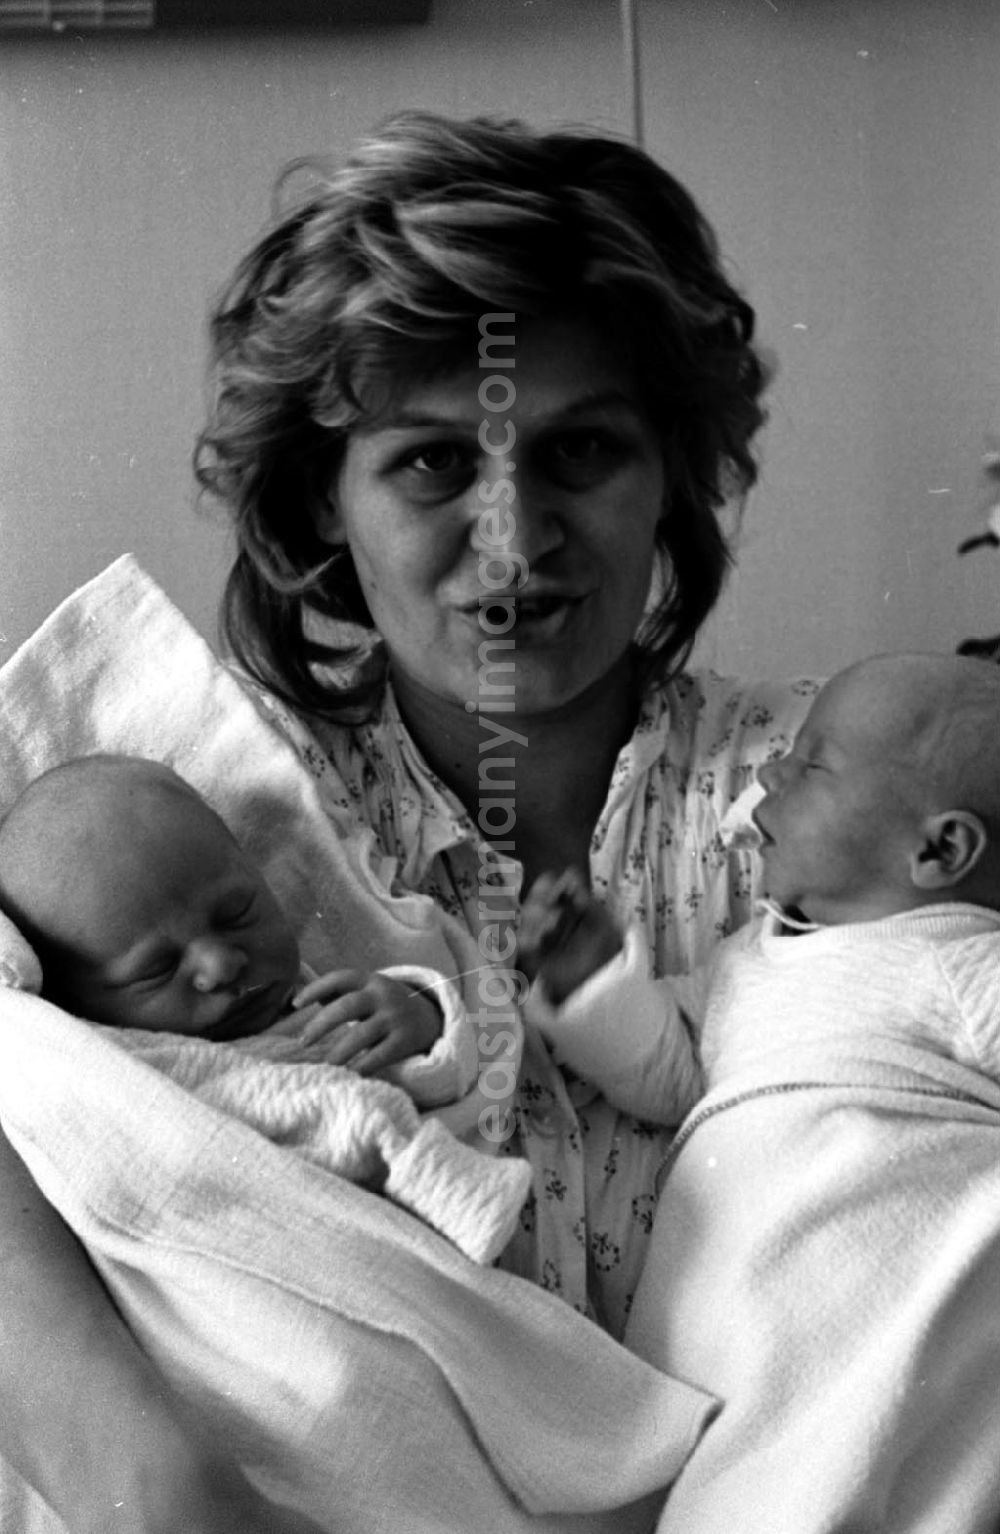 Berlin: Mutter mit ihren Neugeborenen Zwillingen.